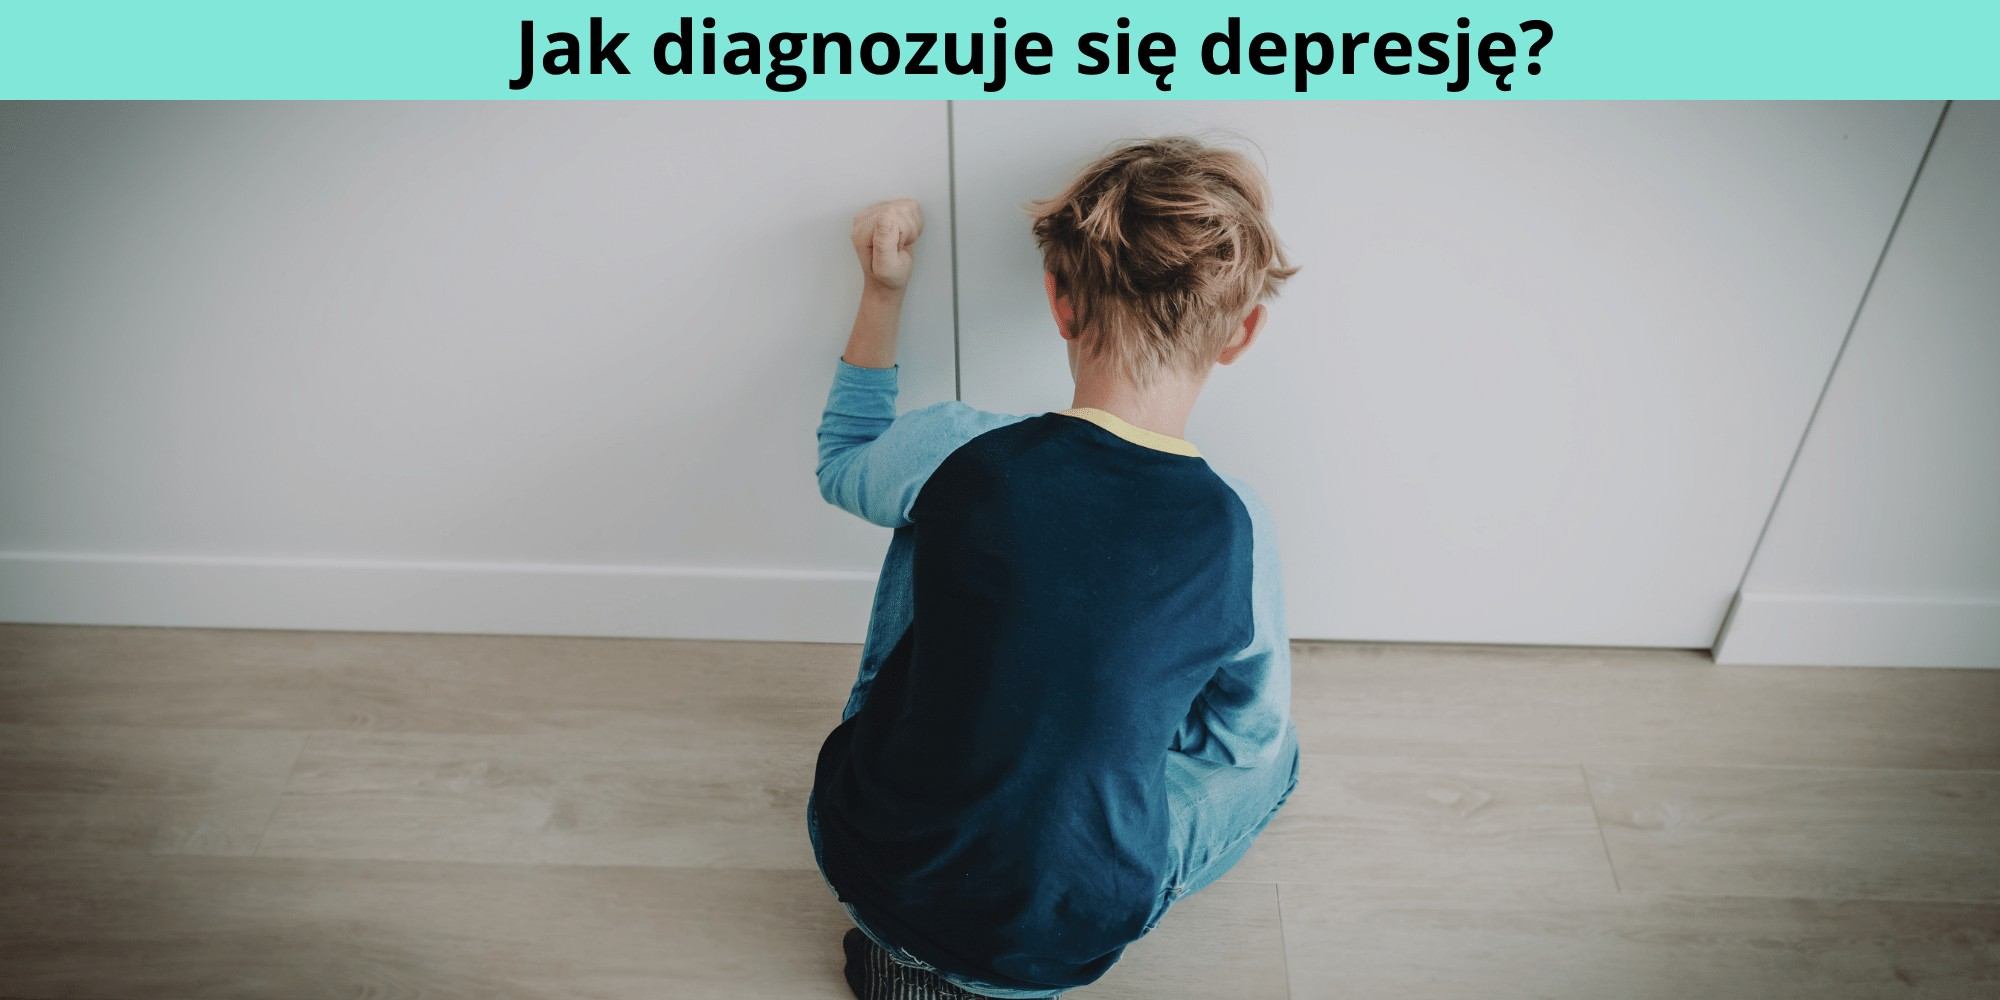 Jak diagnozuje się depresję?